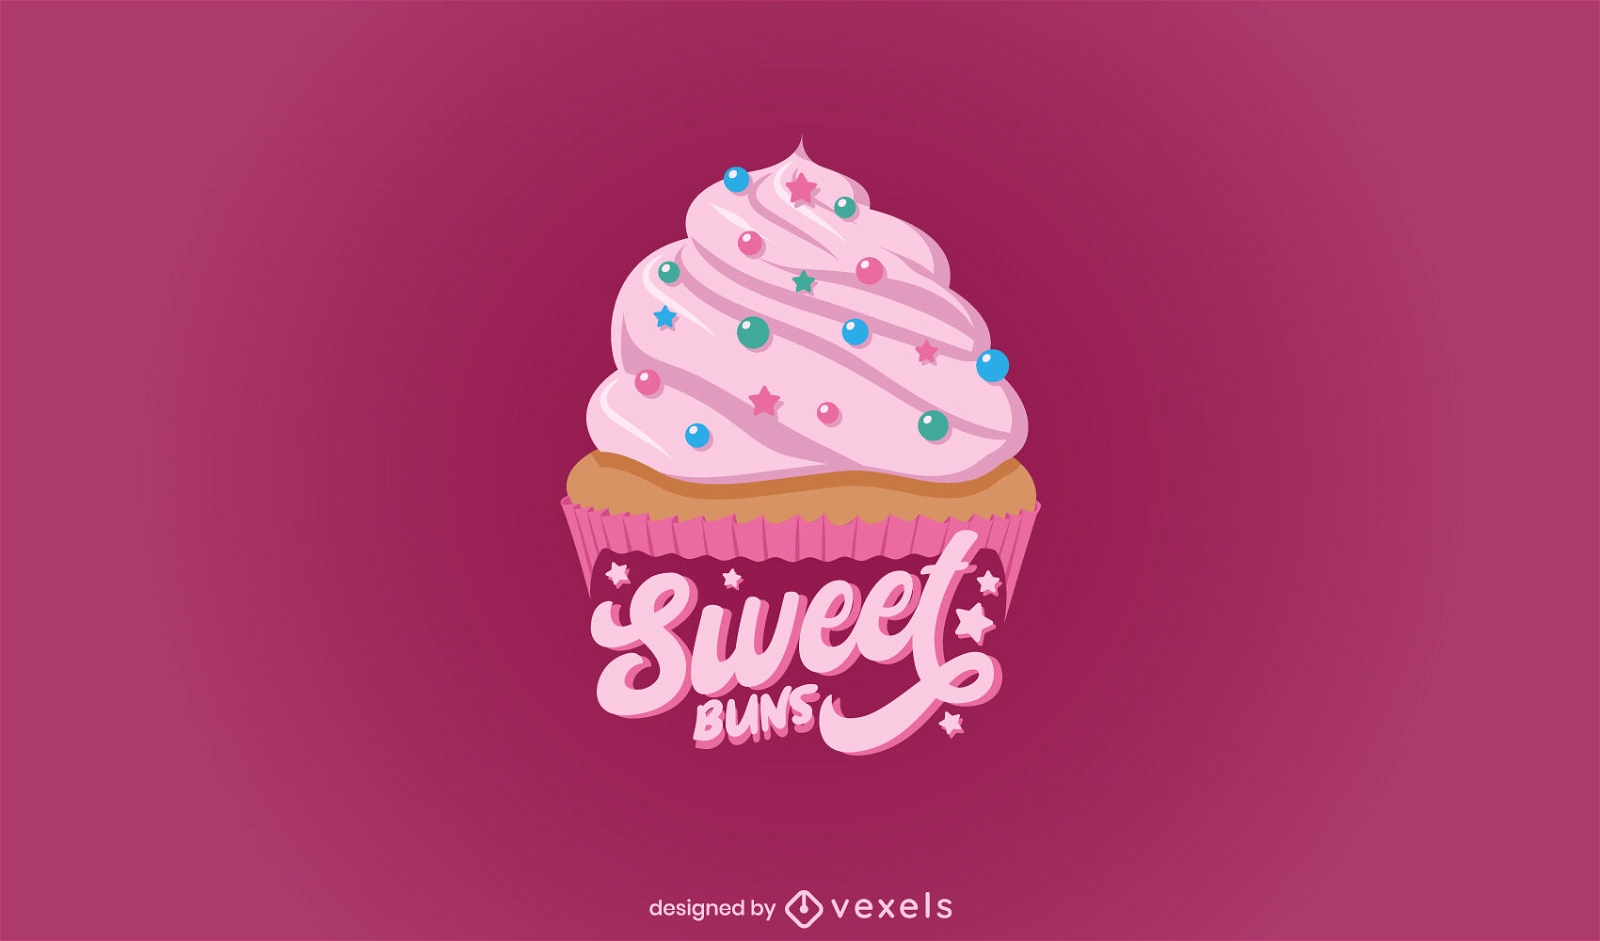 Sweet buns pink cupcake